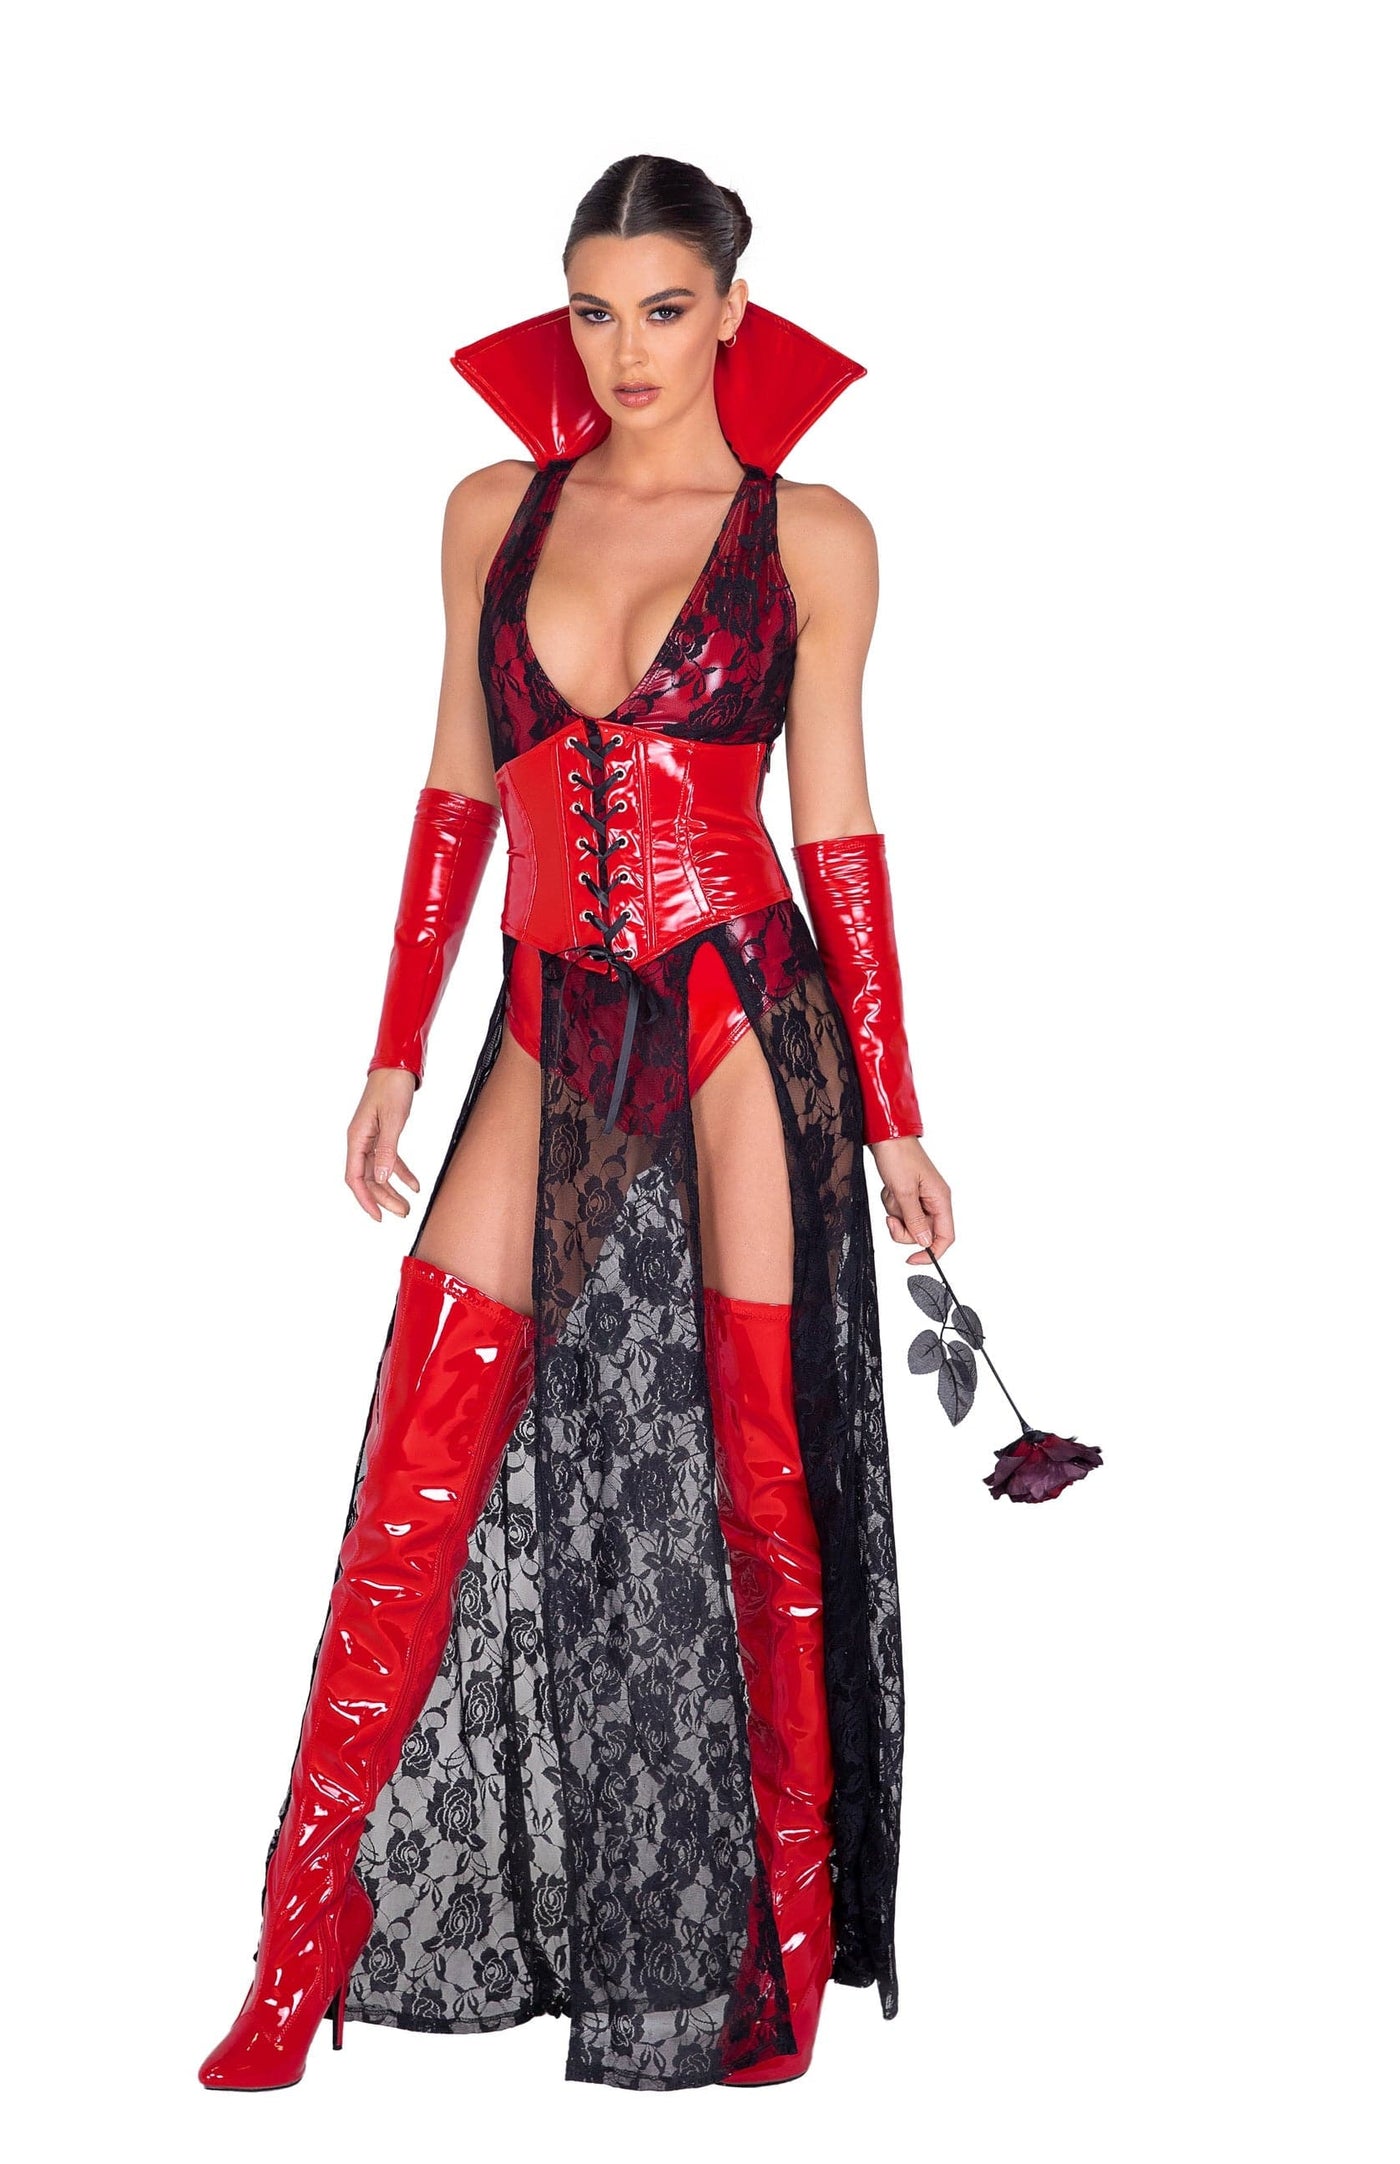 3pc. Wicked Vampire Vixen Women's Costume - For Love of Lingerie